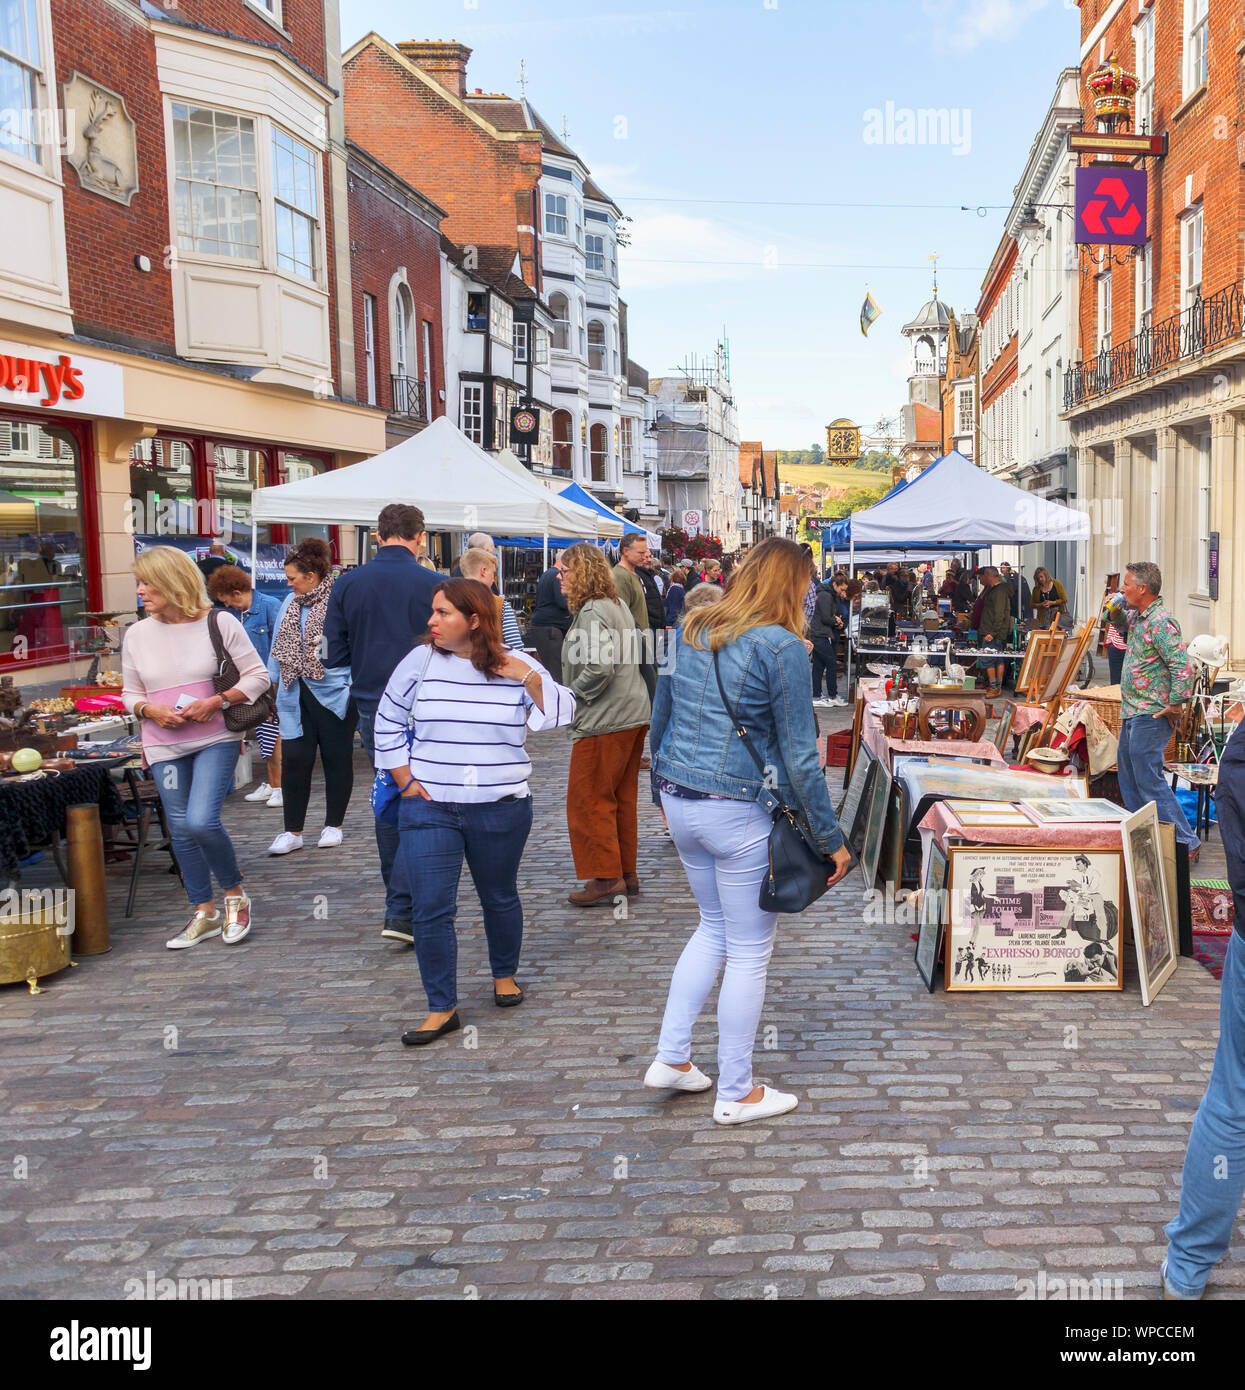 En vista de calado popular, ocupado Domingo Guildford mercadillo de antigüedades y Brocante a lo largo de High Street, Guildford, Surrey, sudeste de Inglaterra, Reino Unido. Foto de stock